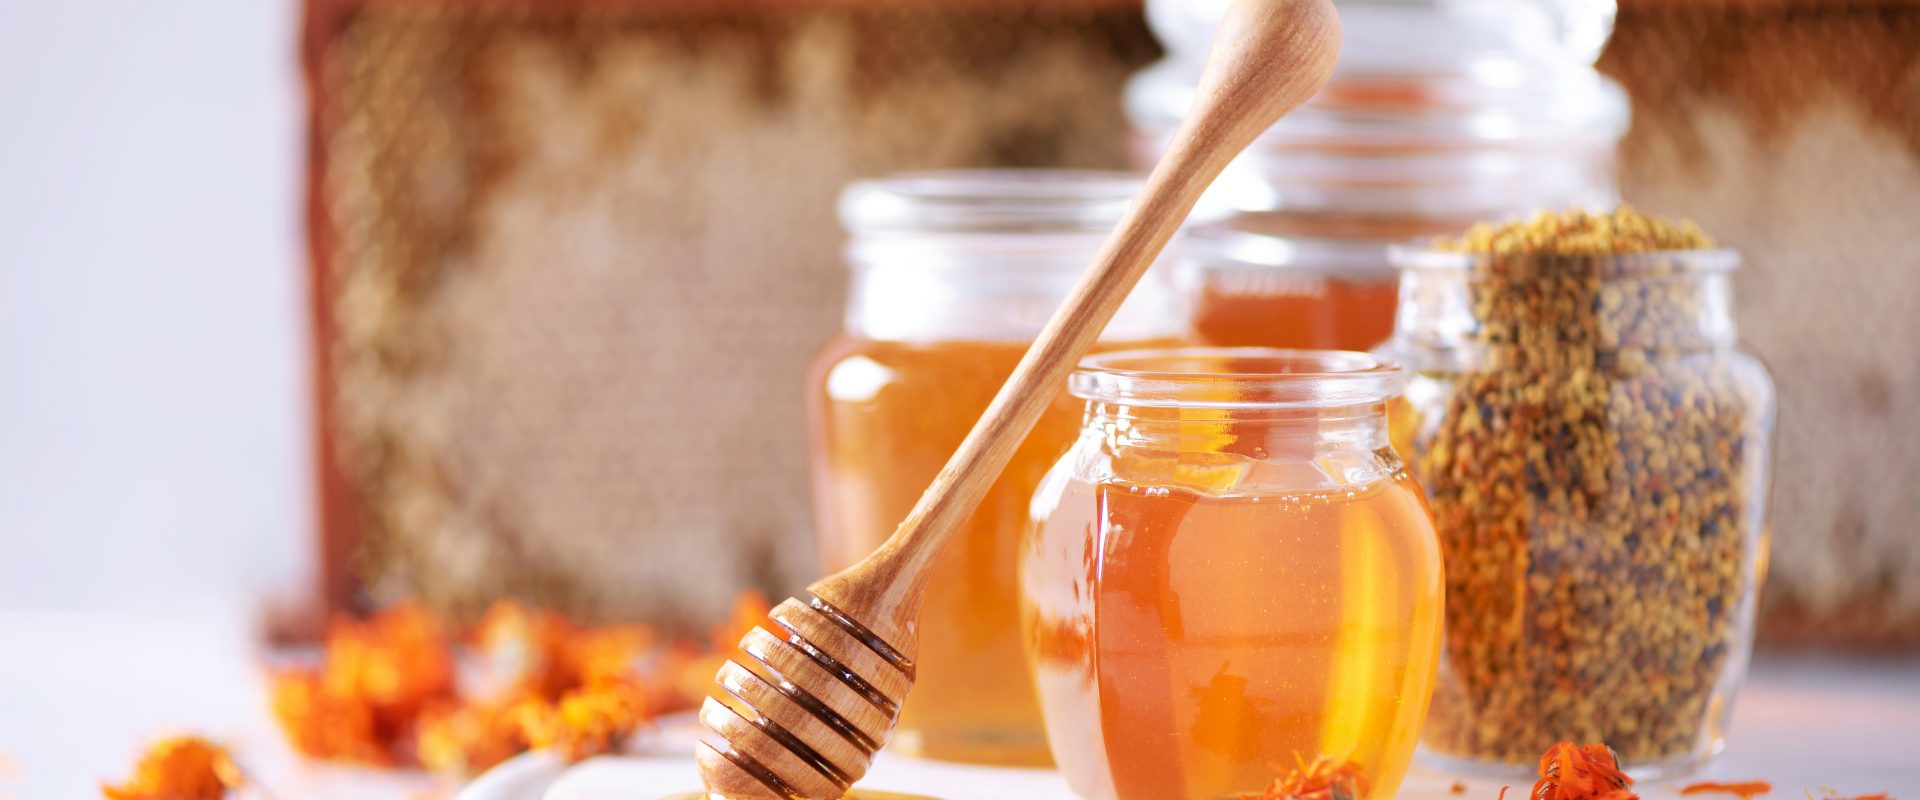 Apiterapia - leczenie produktami pszczelimi. Na czym polega? Miód i produkty pszczele na białej desce w kuchni.